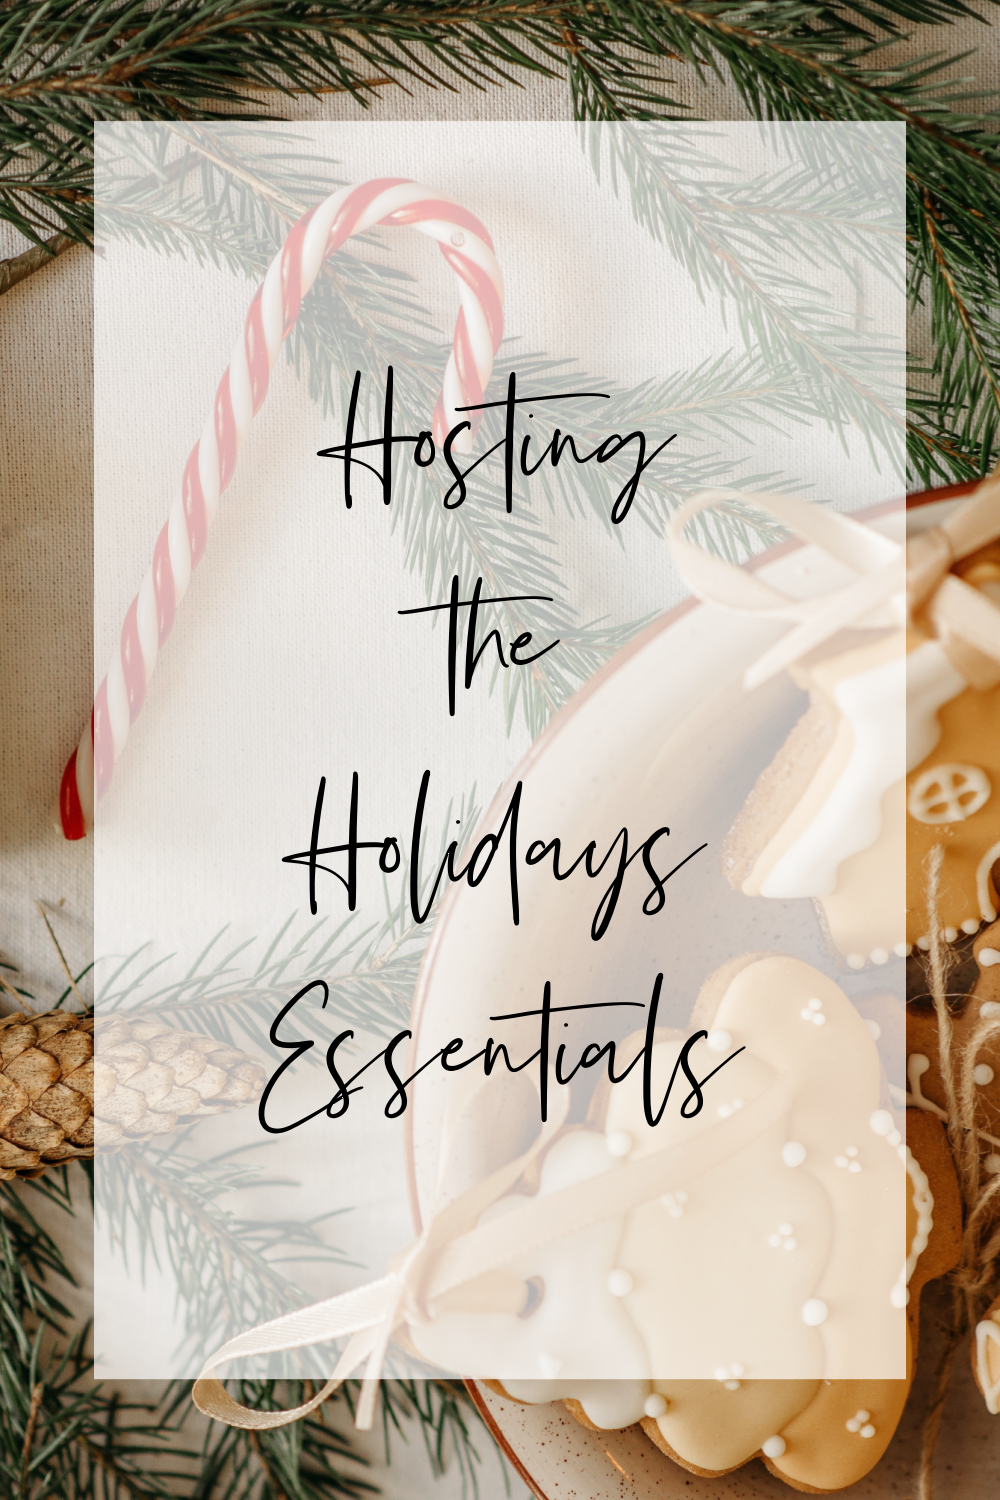 Hosting the Holidays Essentials